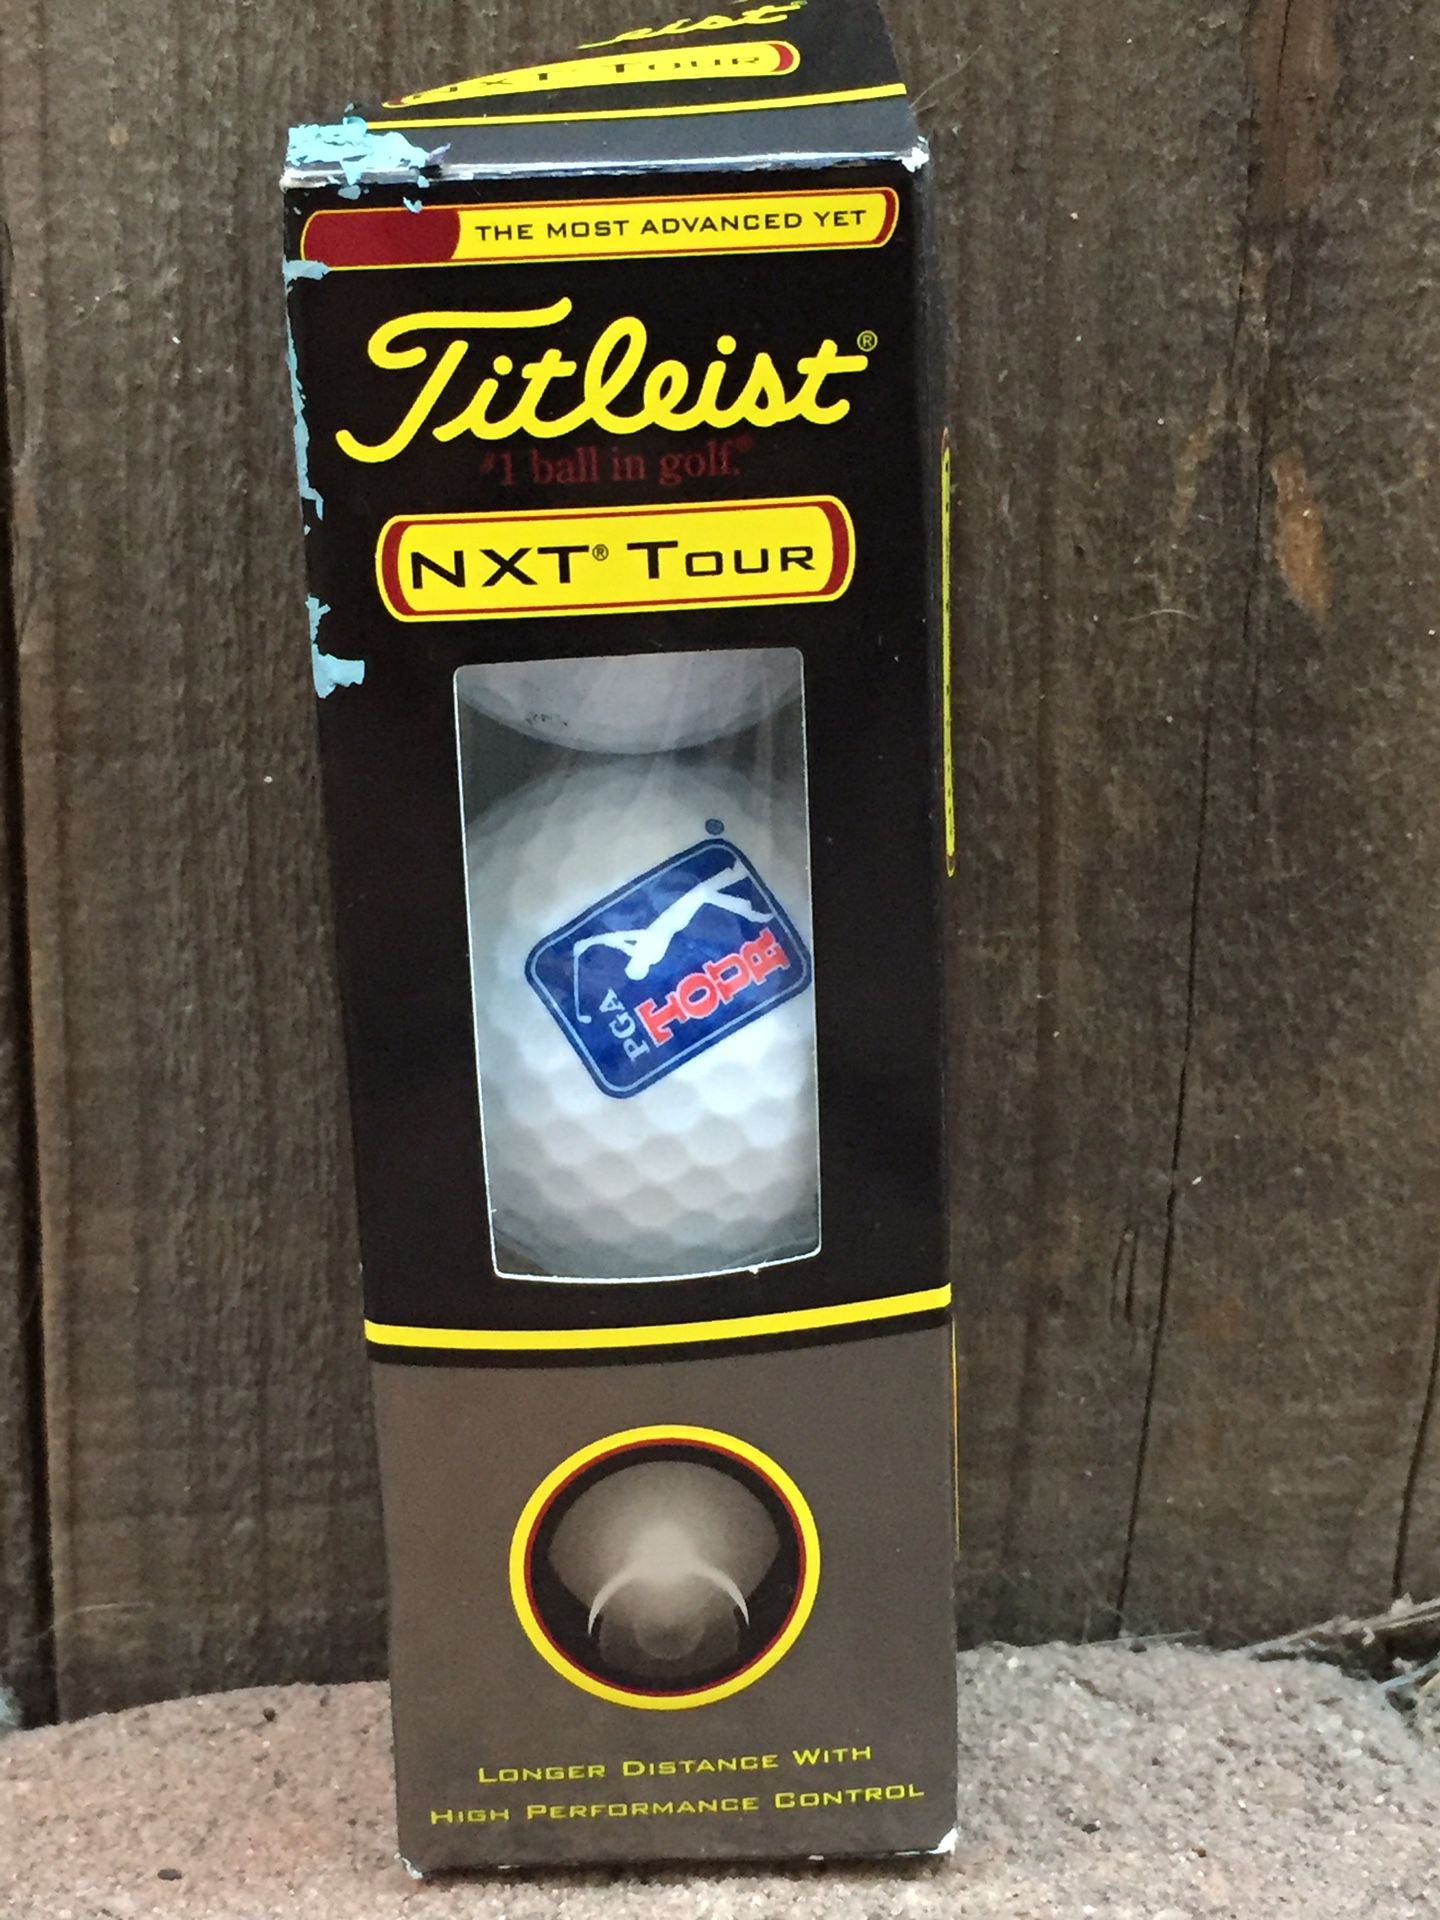 NXT tour golf balls